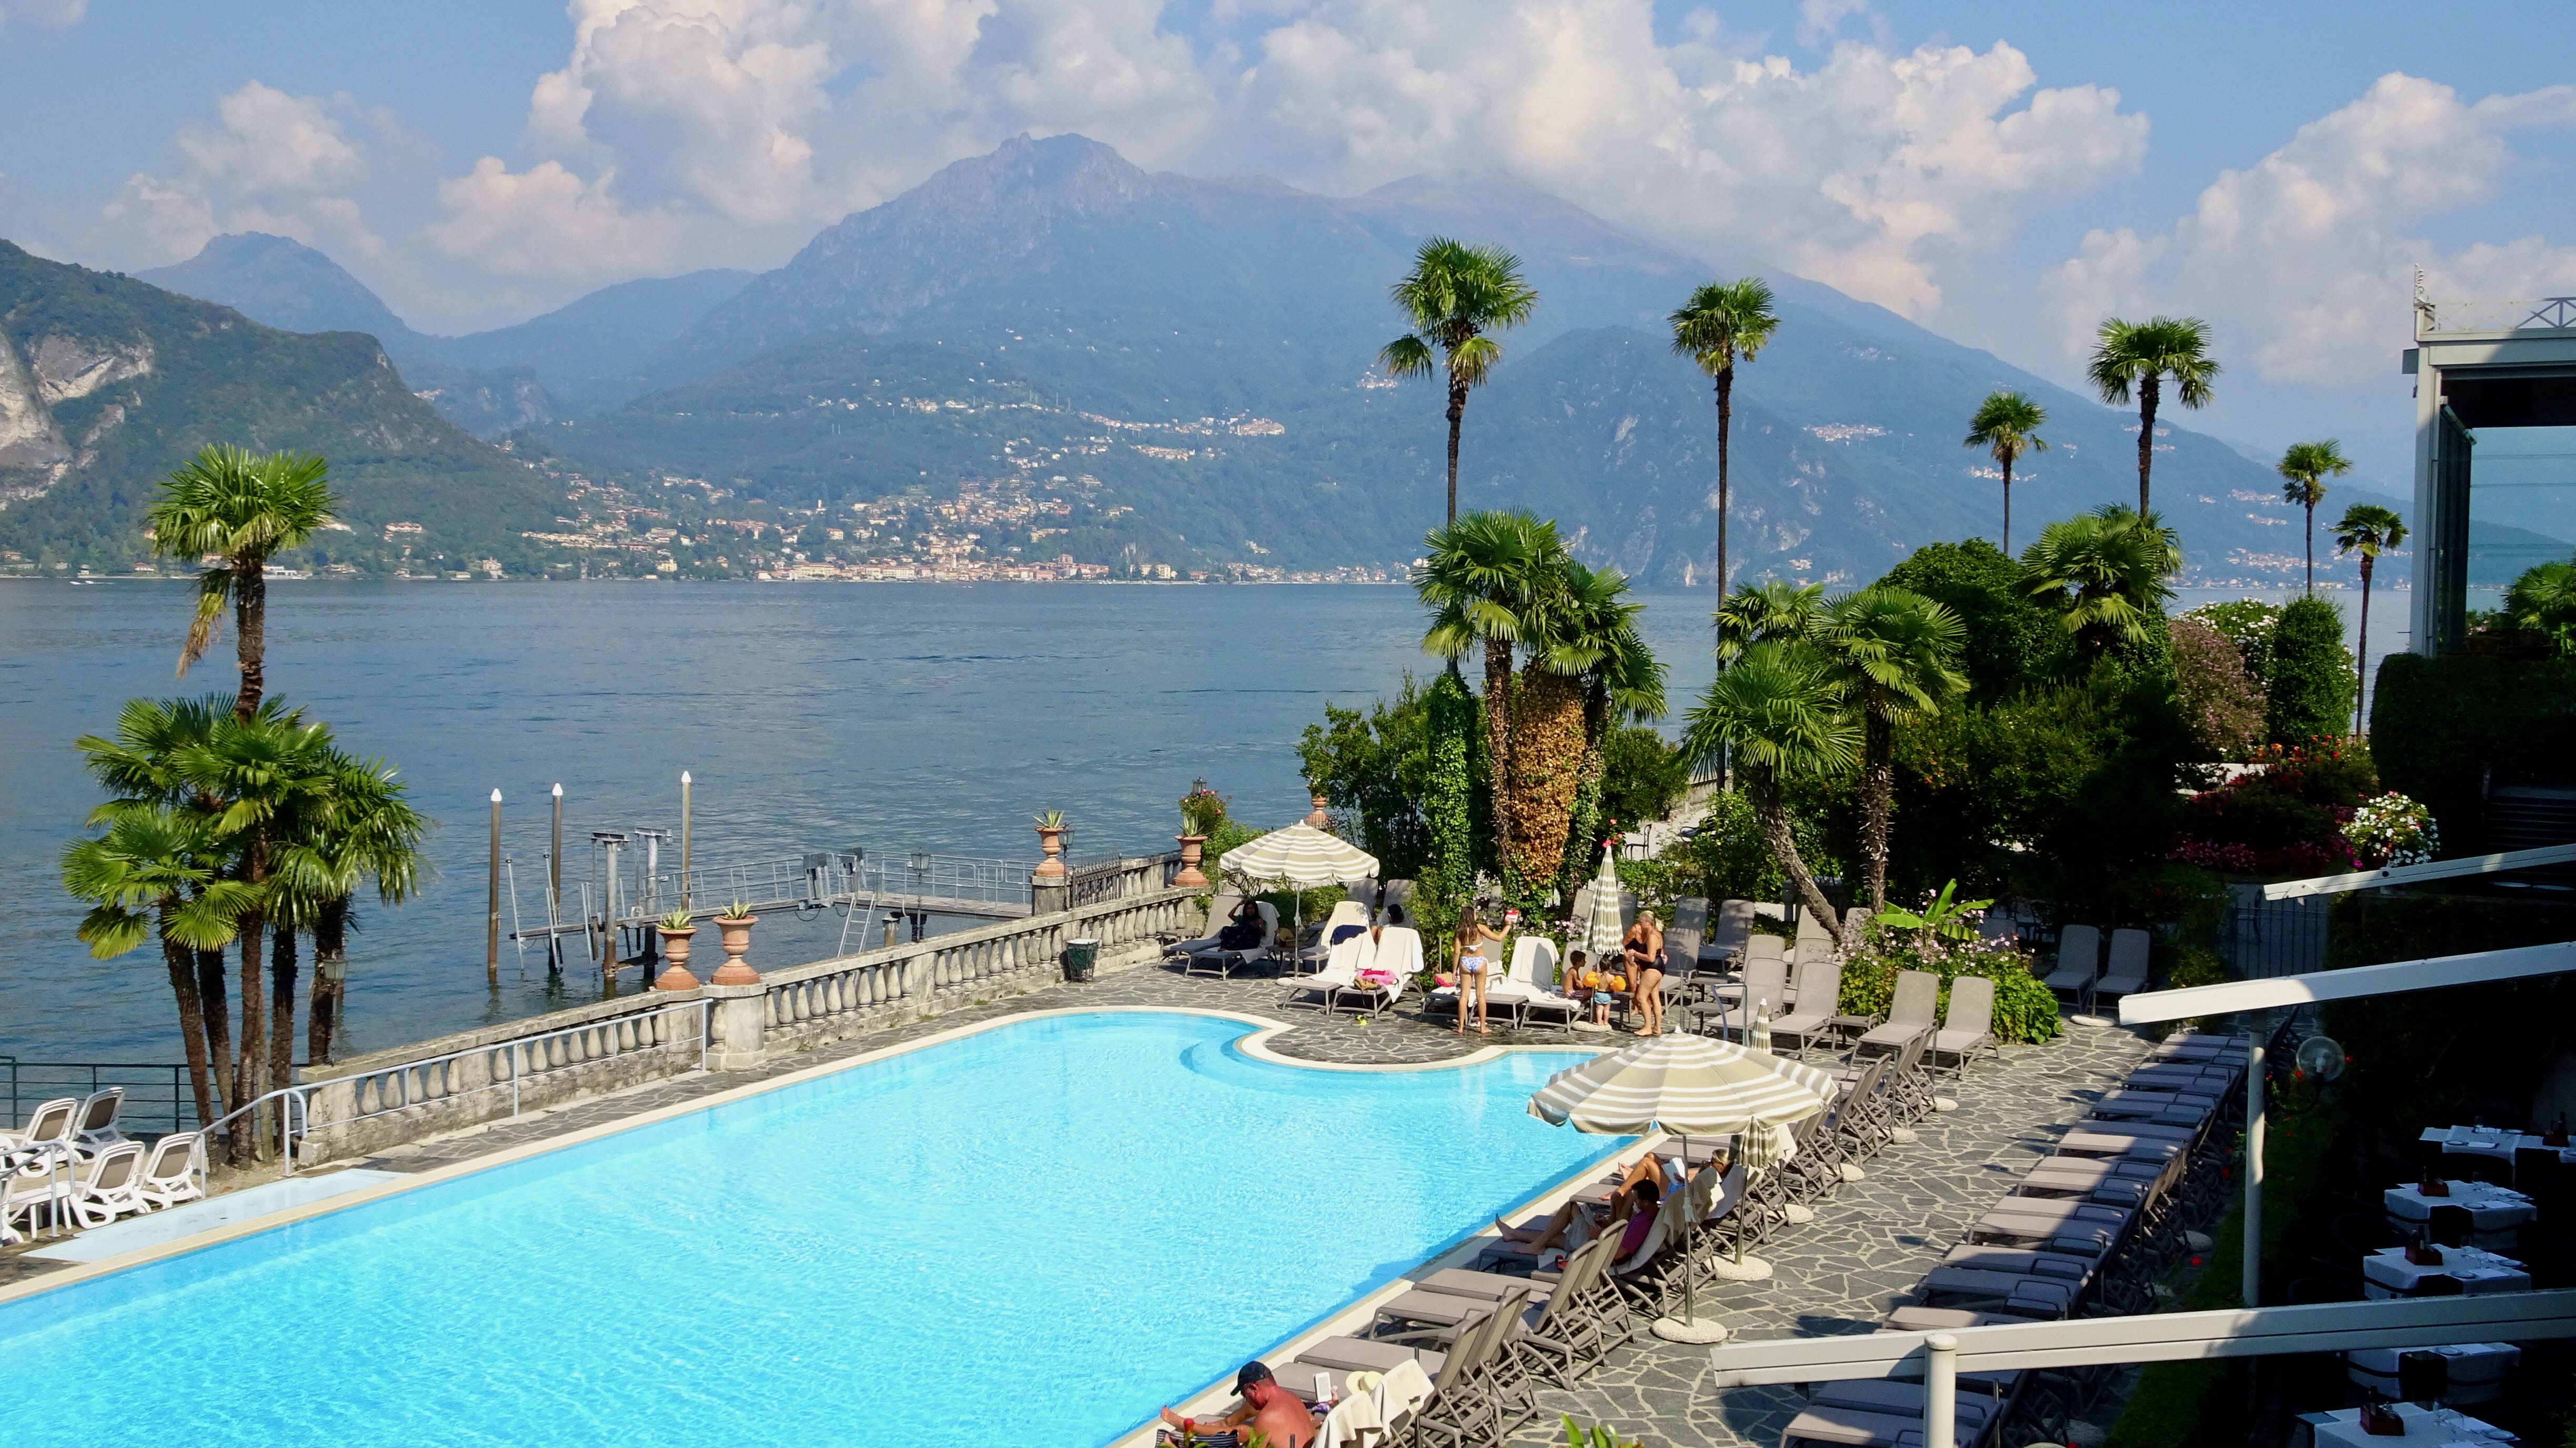 Grand Hotel Villa Serbelloni, Bellagio, Lake Como Day Trip